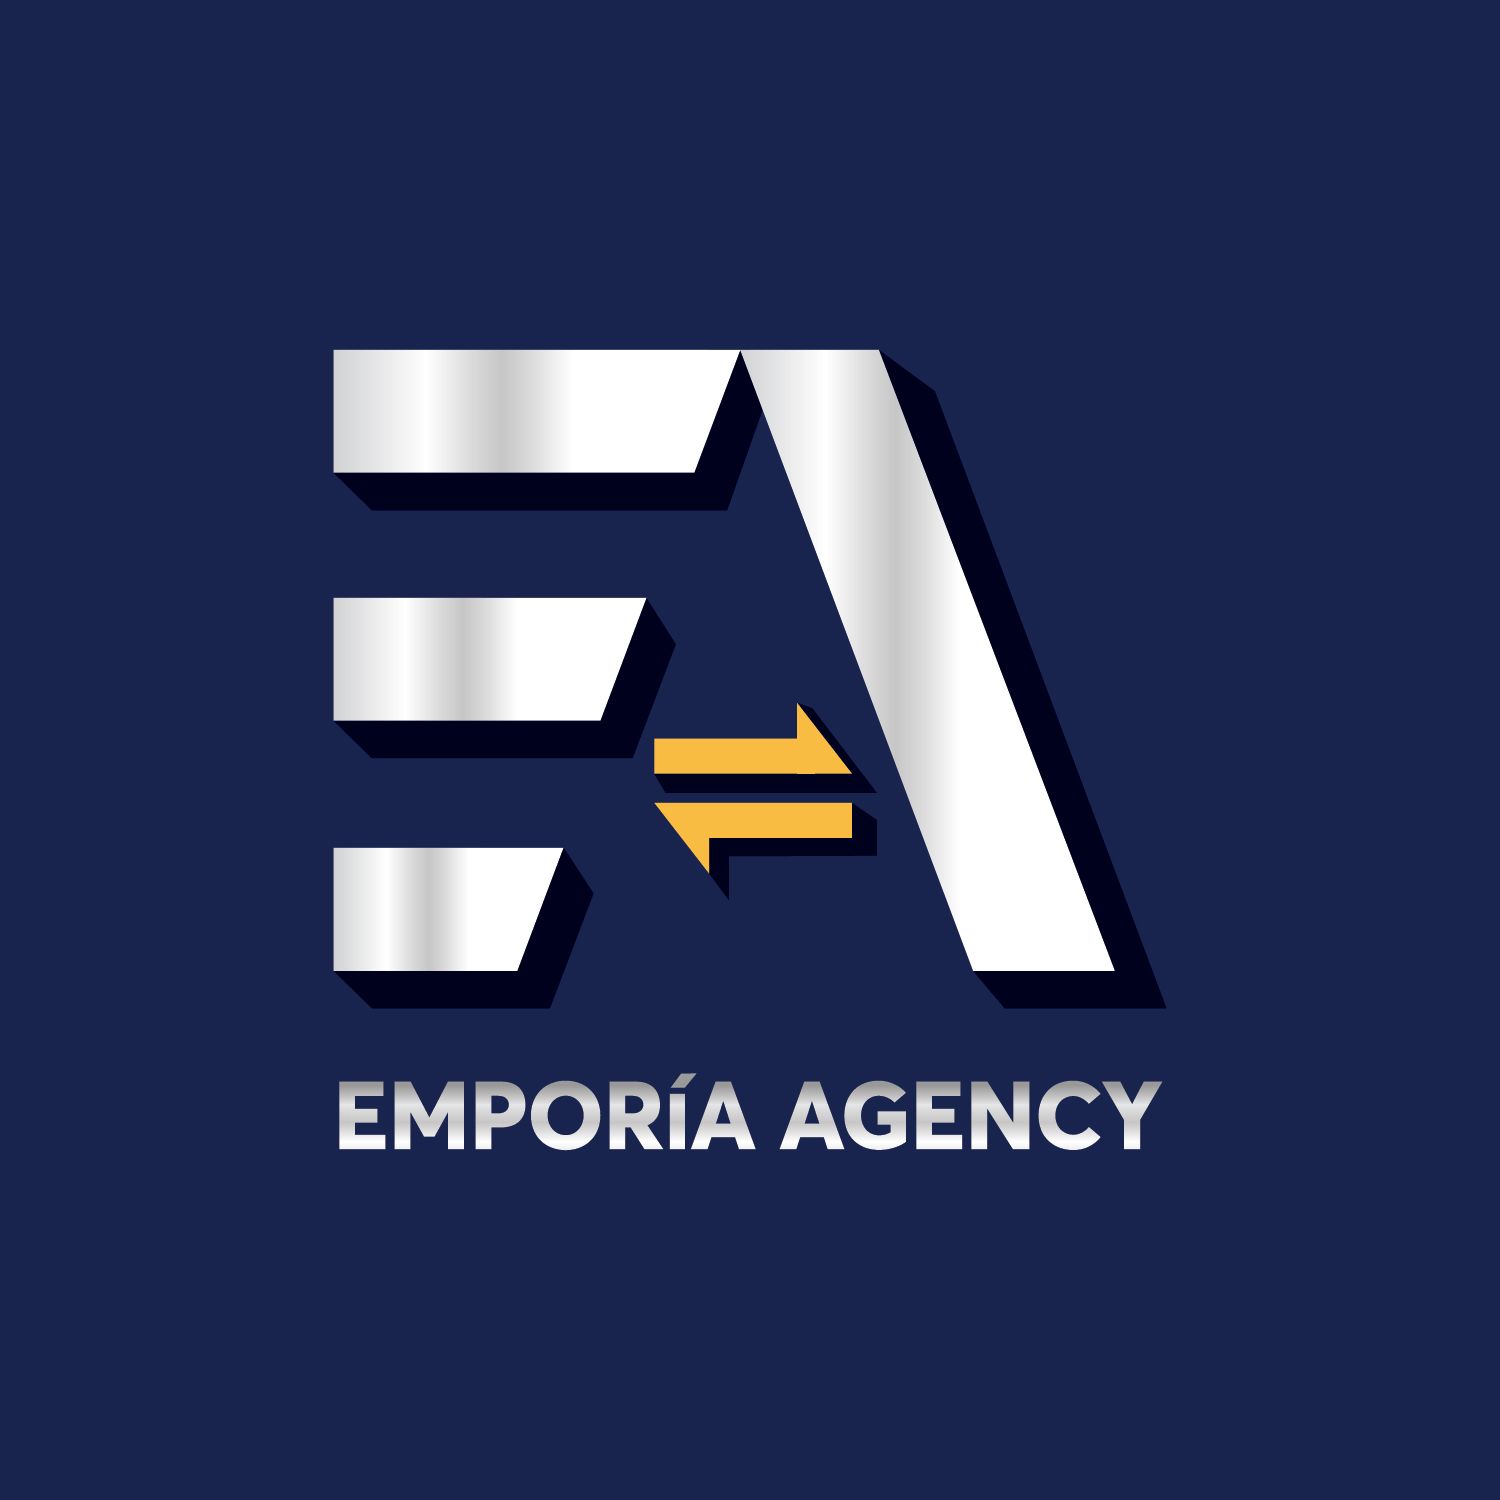 Emporia Agency